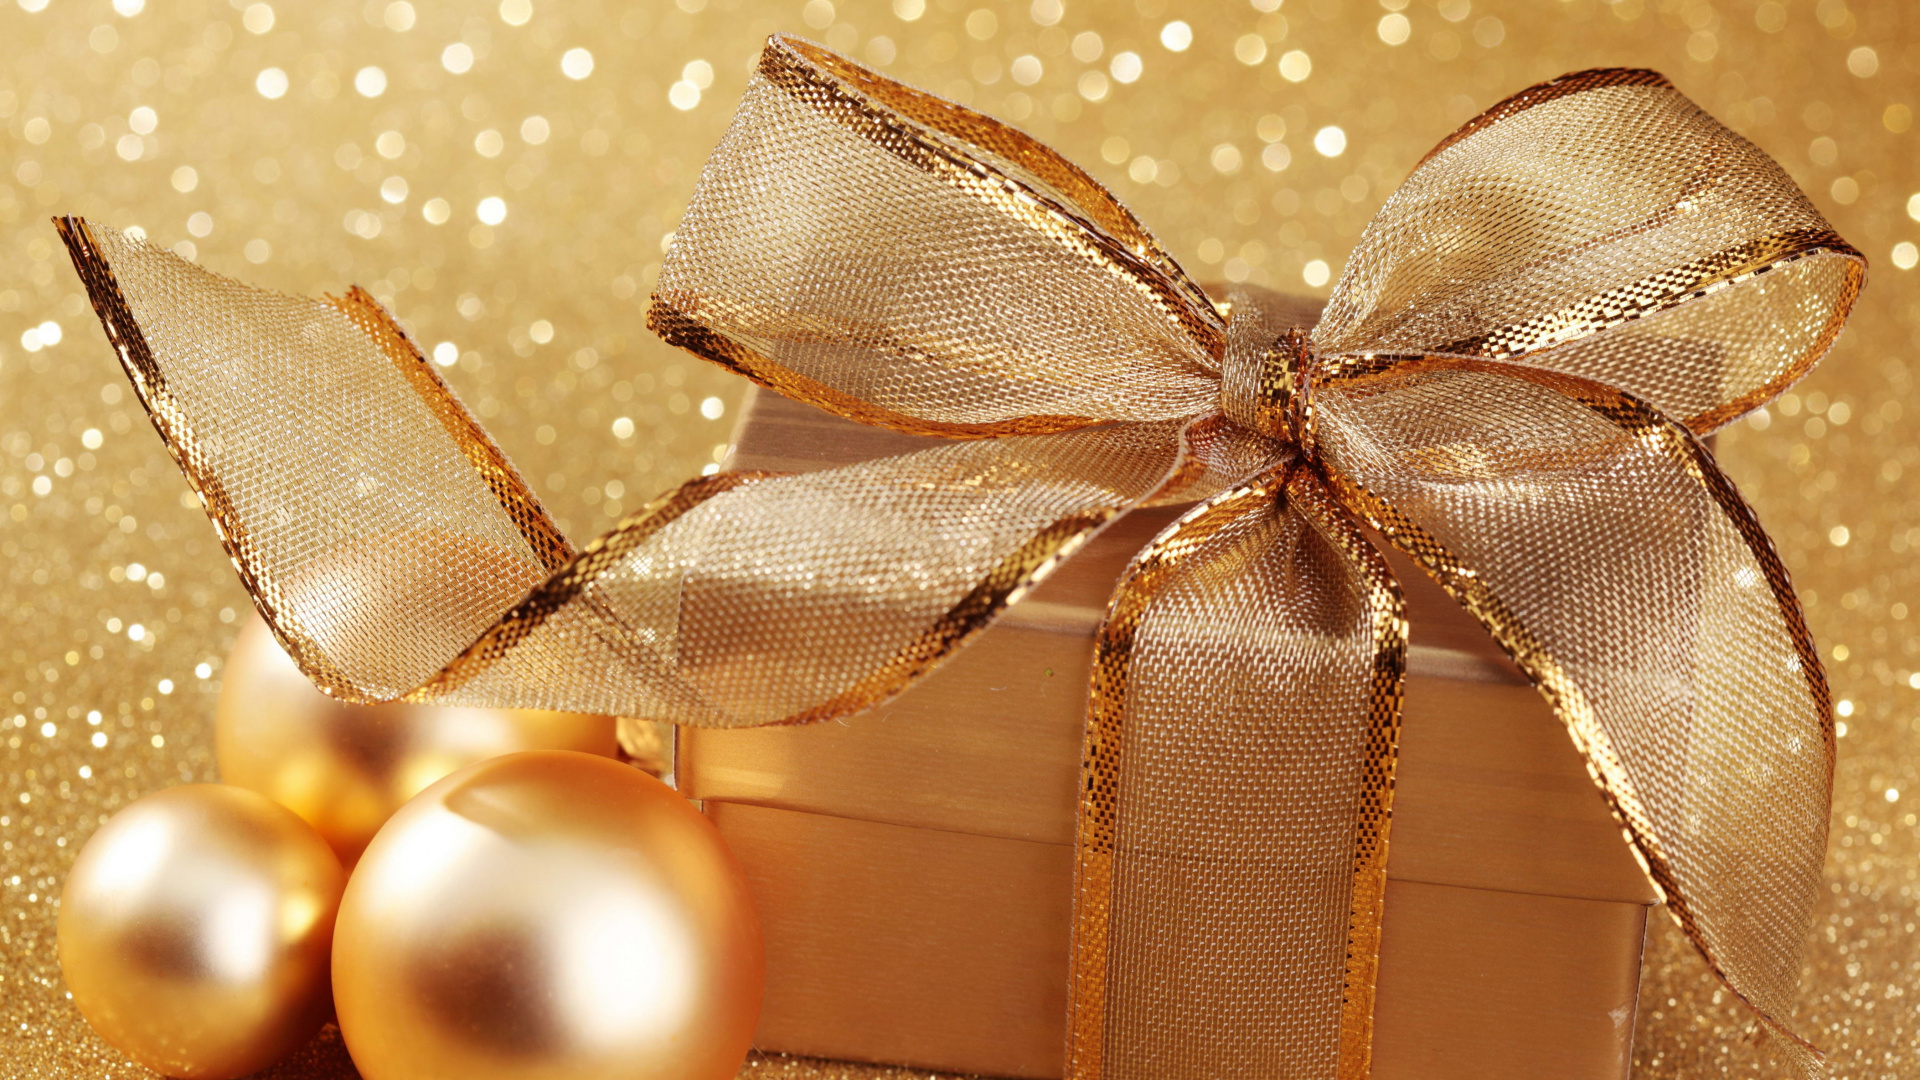 新的一年, 圣诞节那天, 假日, 丝带, 礼品包装 壁纸 1920x1080 允许